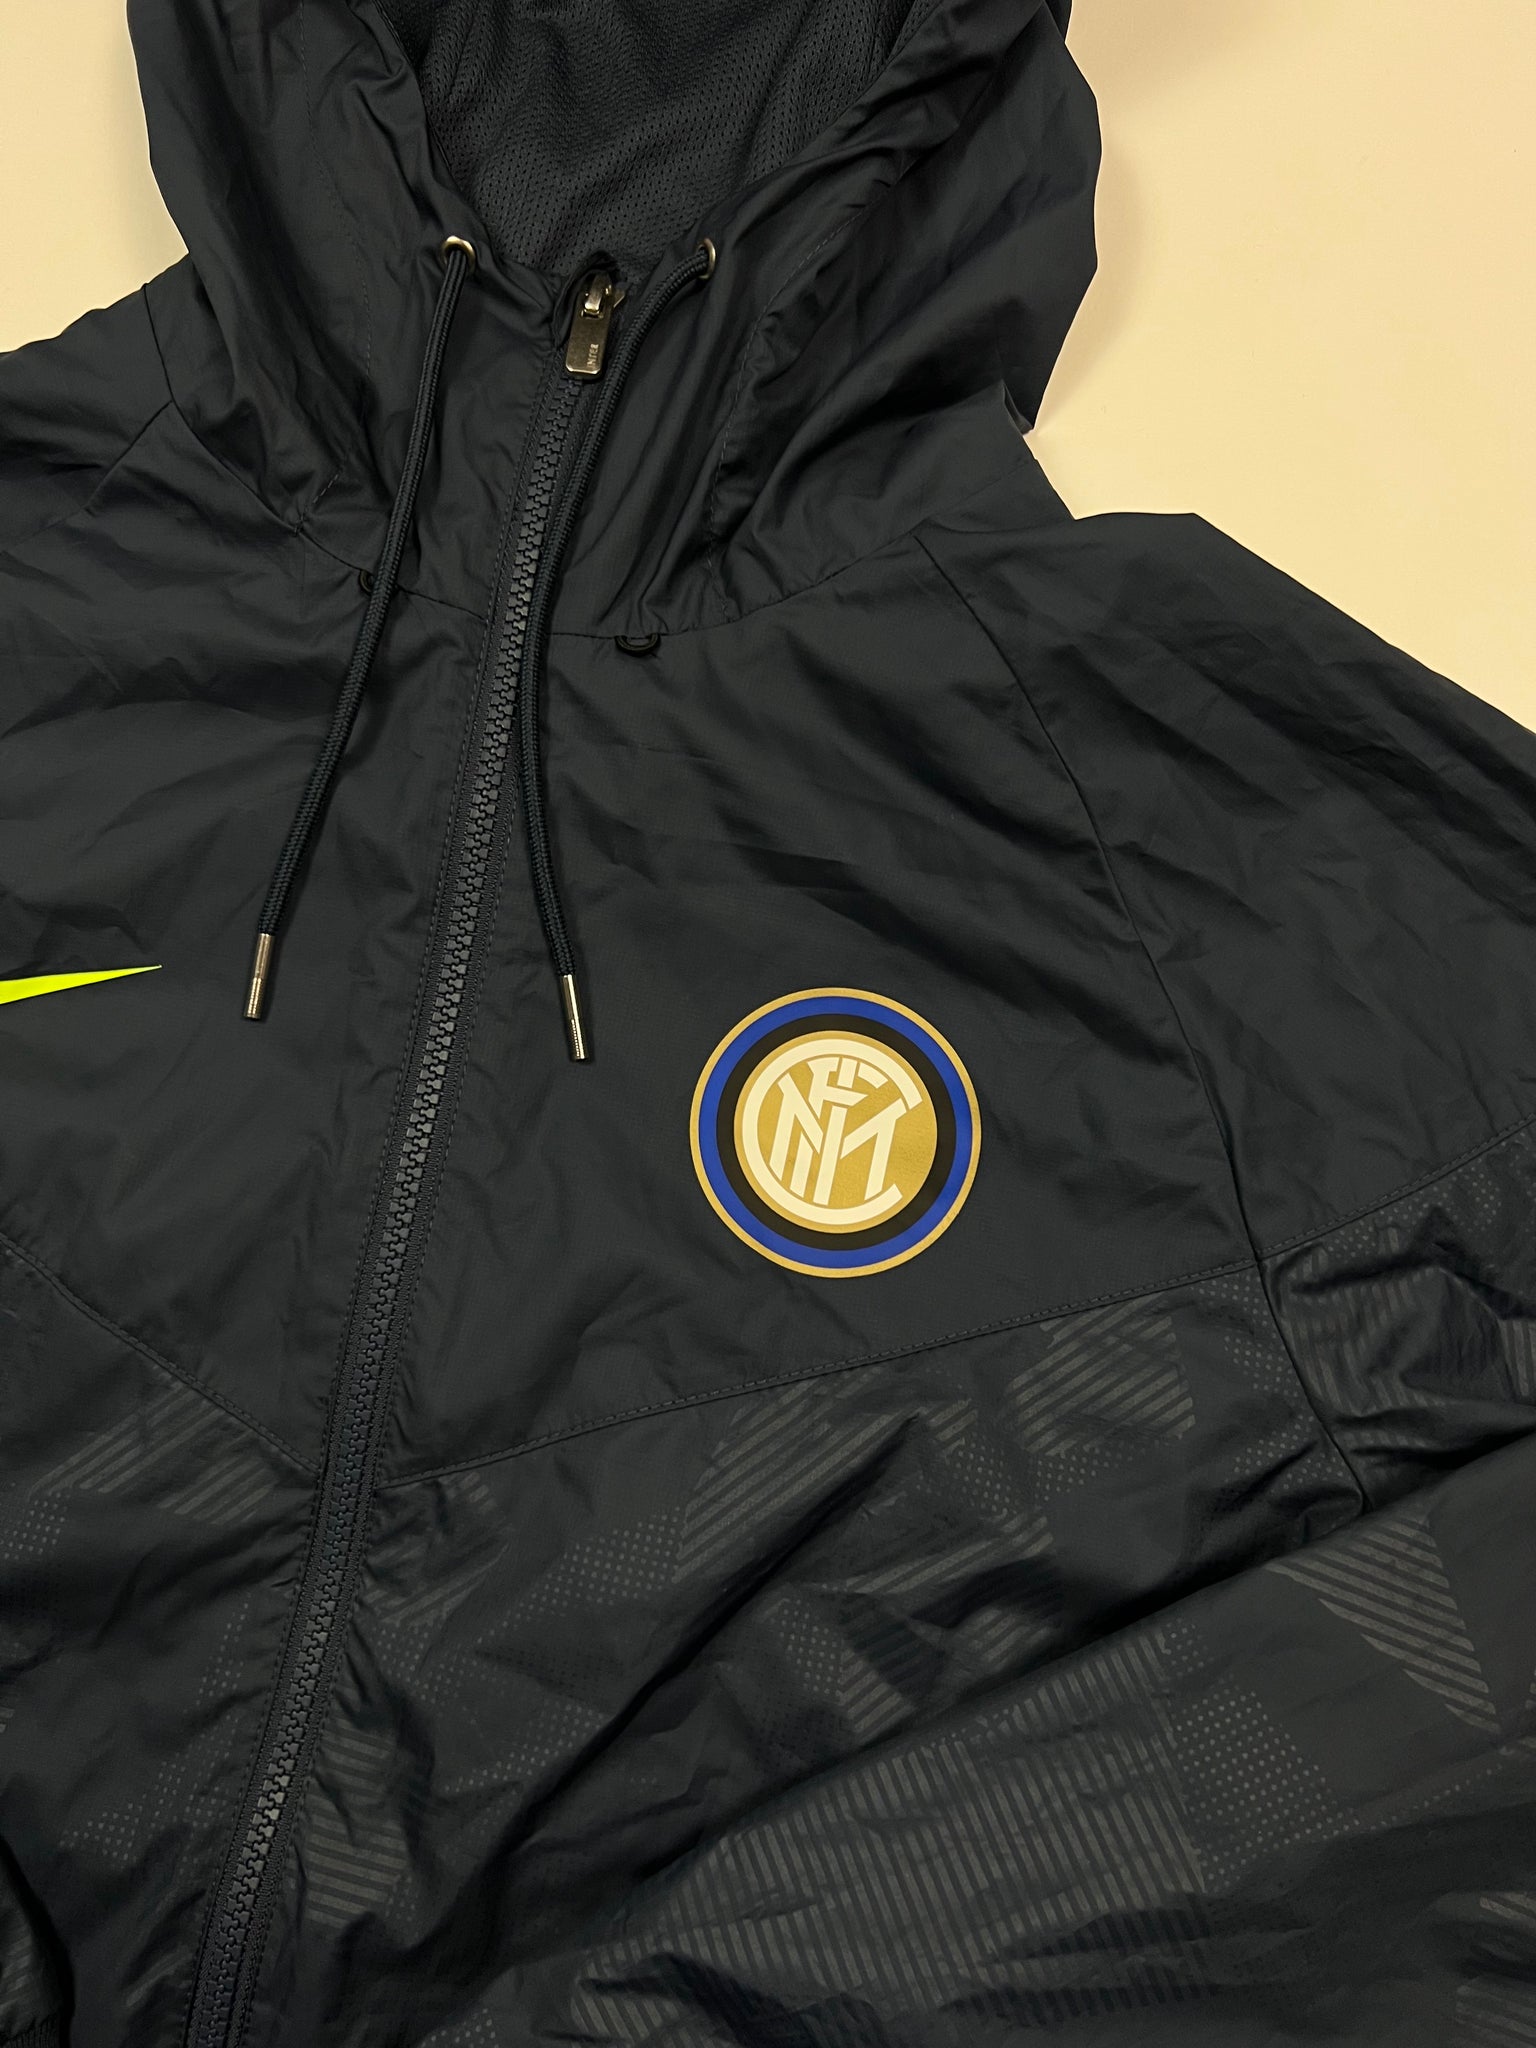 Nike Inter Milano Jacket (M)